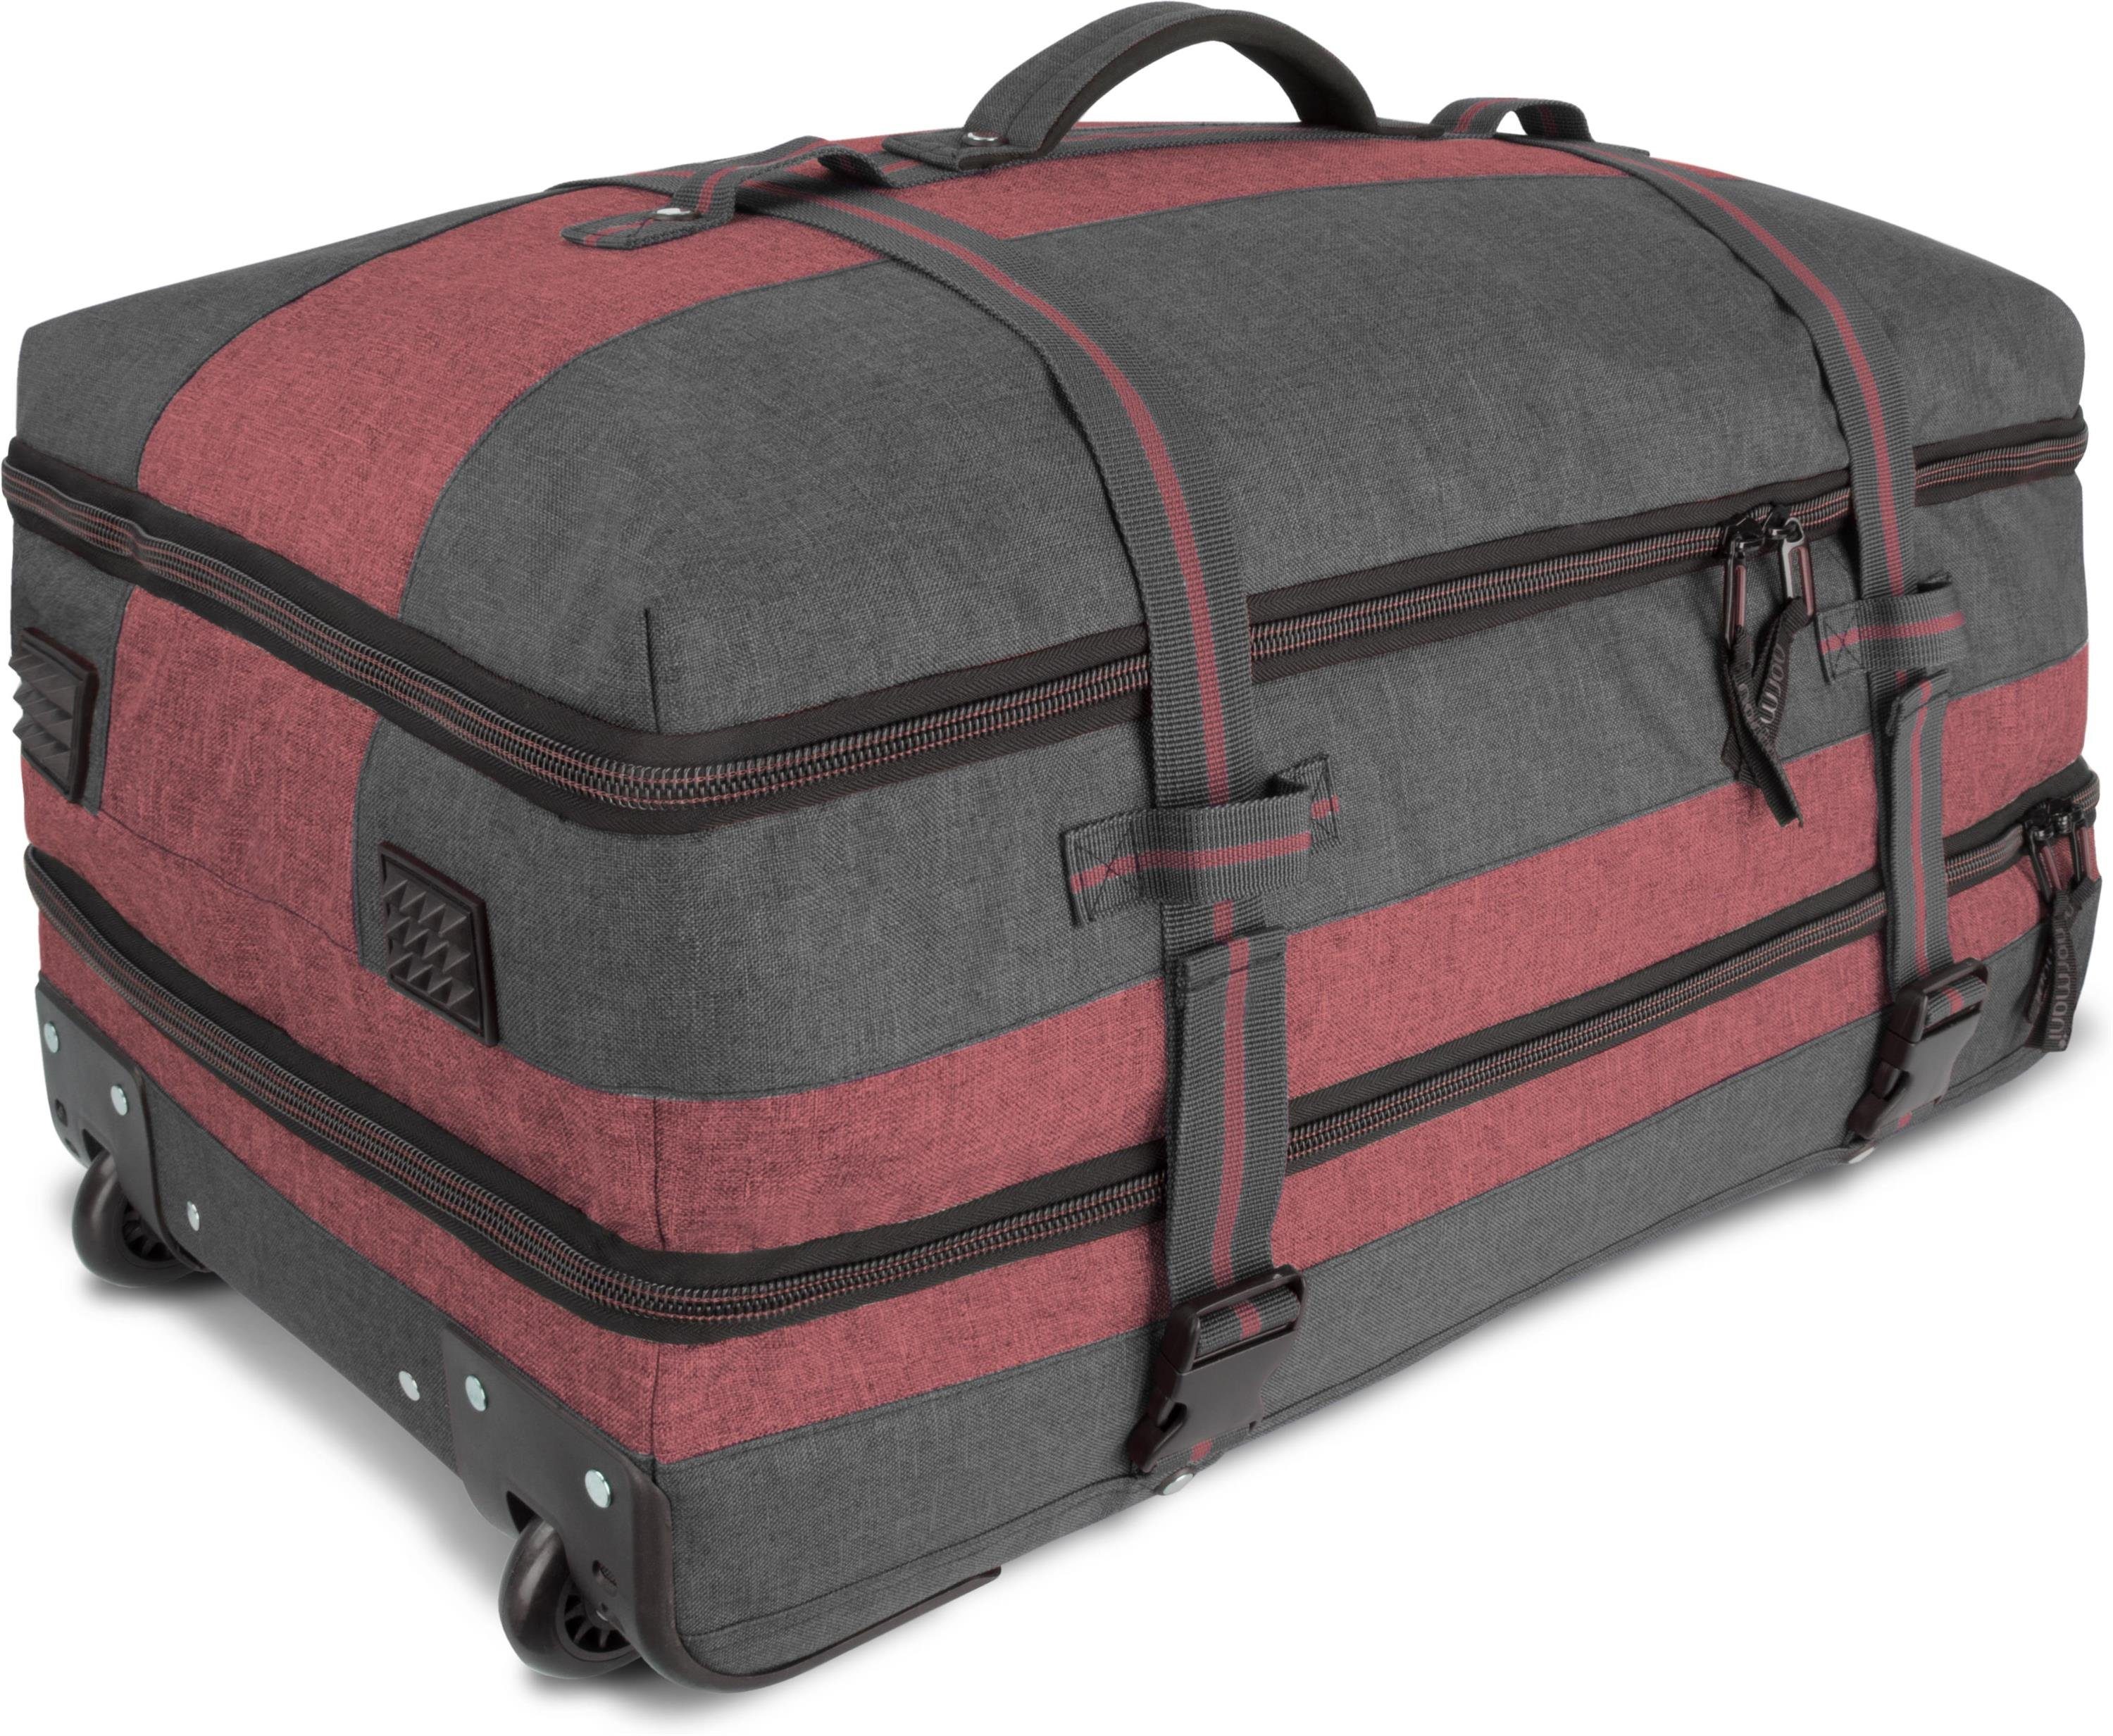 Aurori mit Reisetasche Fächeraufteilung Handgepäckmaß 45, normani Reisetasche Trolley clevere mit Dunkelgrau/Rot